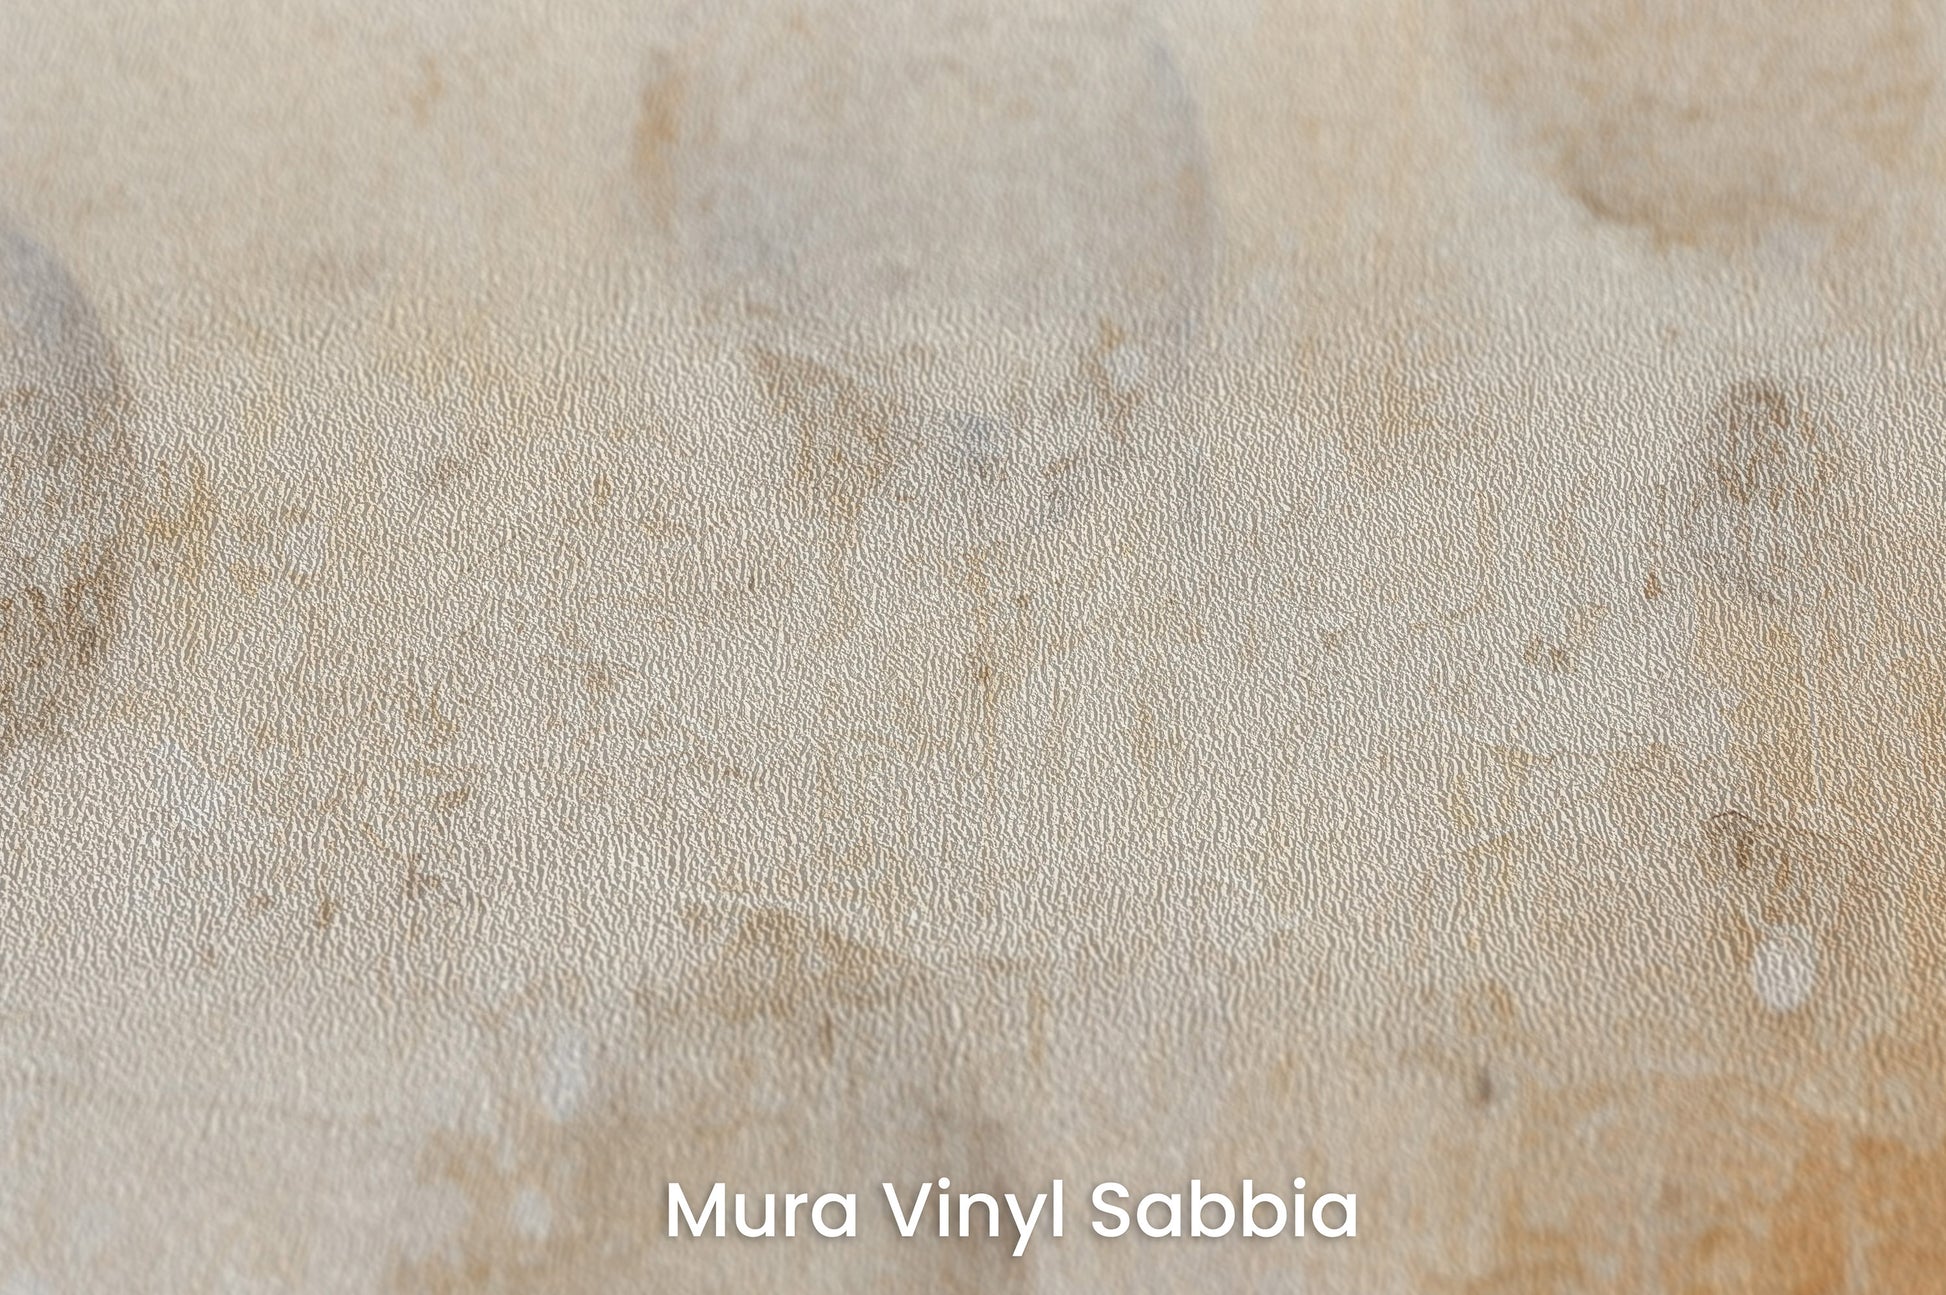 Zbliżenie na artystyczną fototapetę o nazwie SUNBLEACHED SOLAR FLARES na podłożu Mura Vinyl Sabbia struktura grubego ziarna piasku.